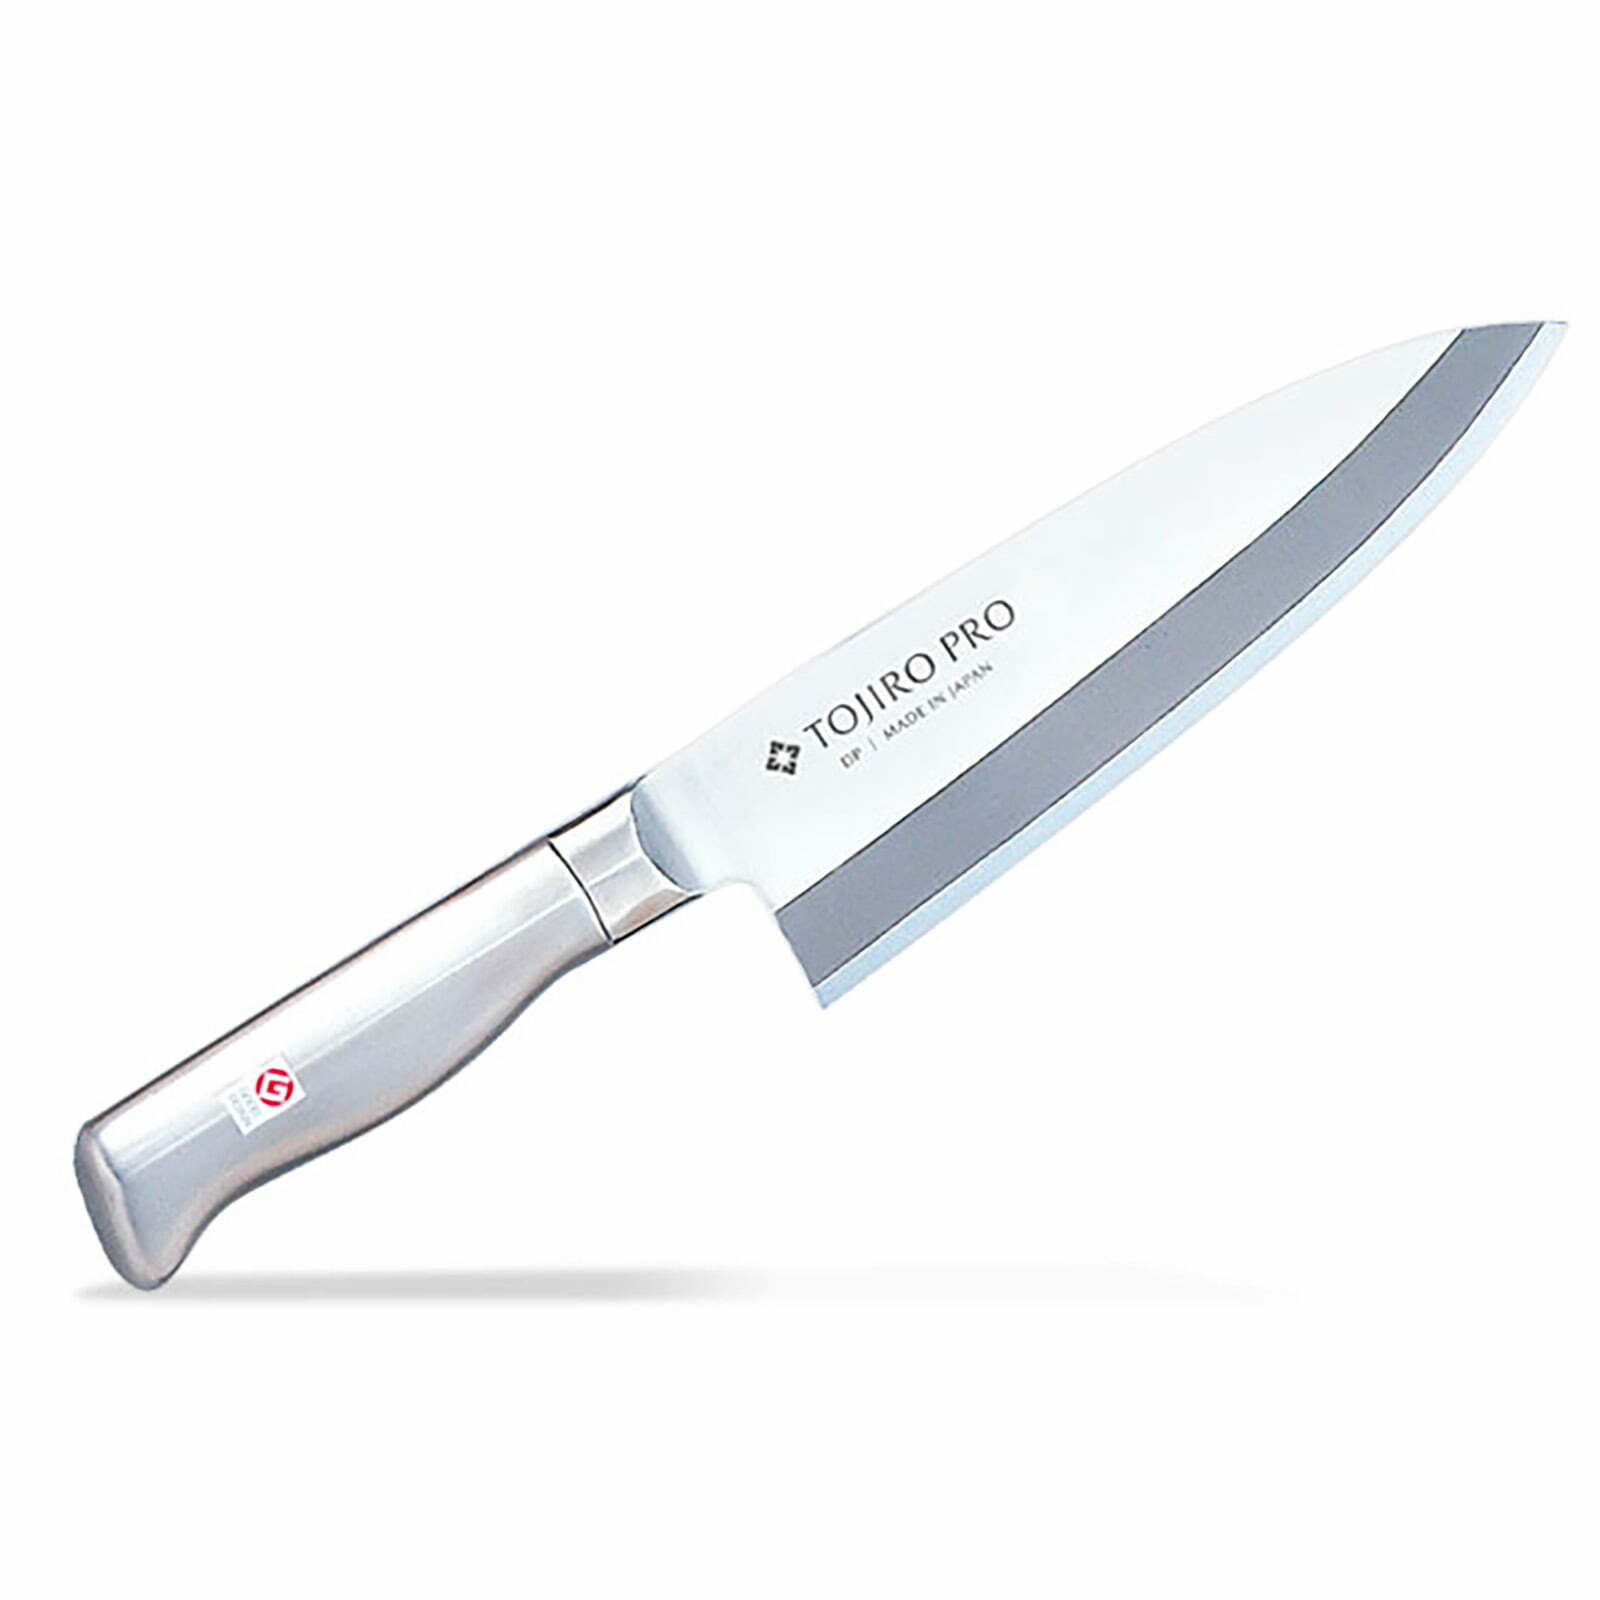 סכין פילוט דגים דבה 180 מ״מ מחוזקת 2 שכבות: פלדת פחמן יפנית VG-10 עטופה פלדת אל-חלד SKTOJIF63711